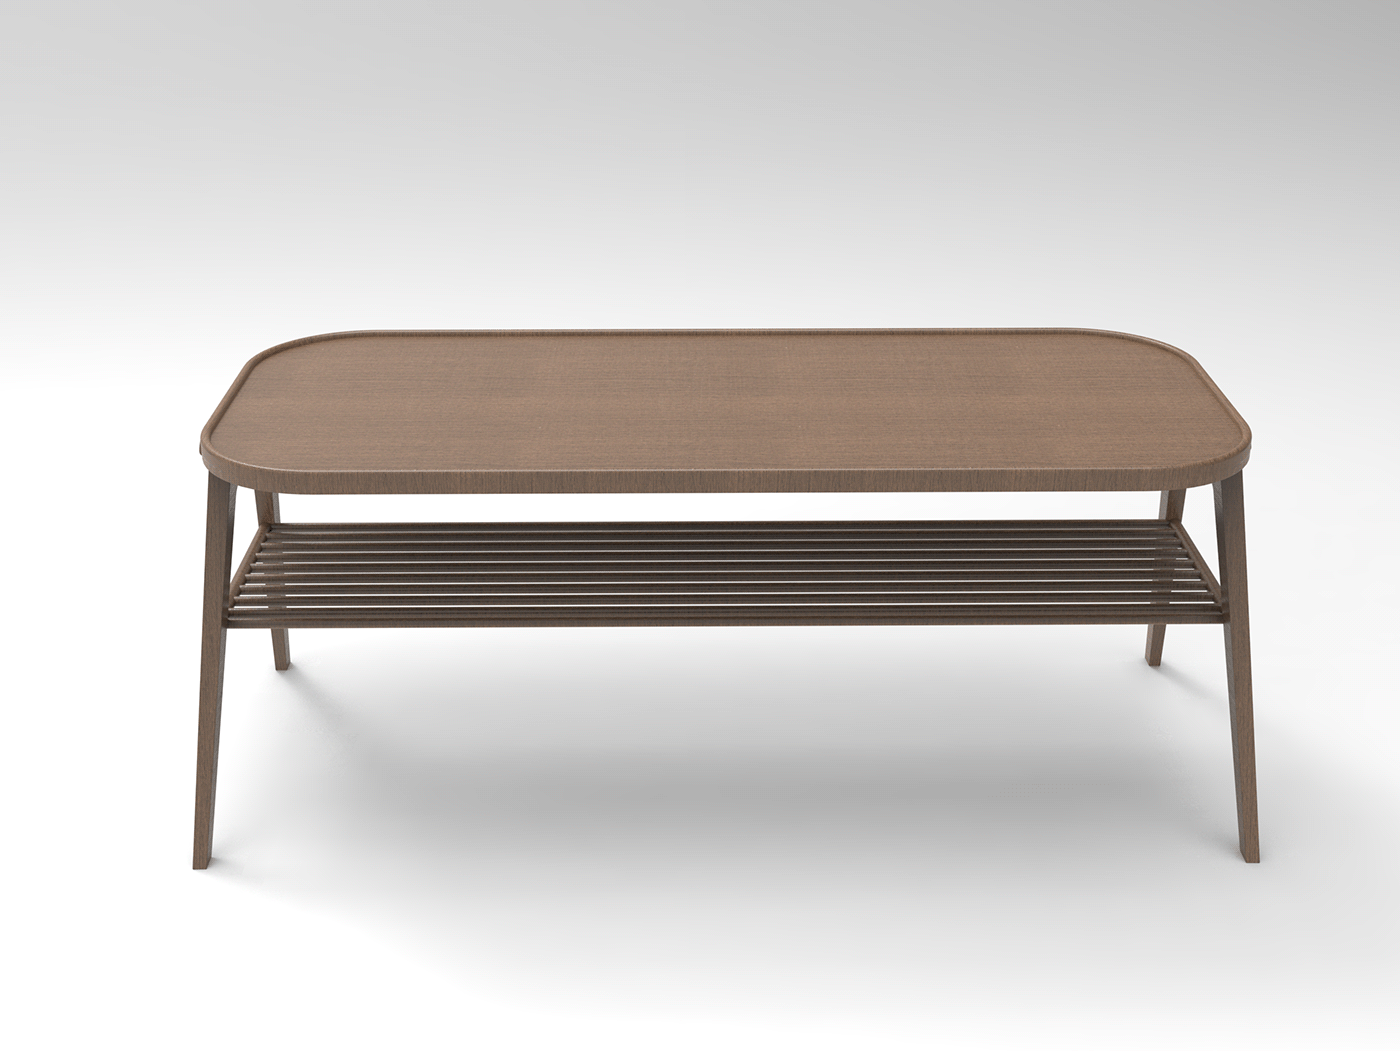 3D design furniture furnituredesign industrialdesign keyshot modern productdesign Render vintage